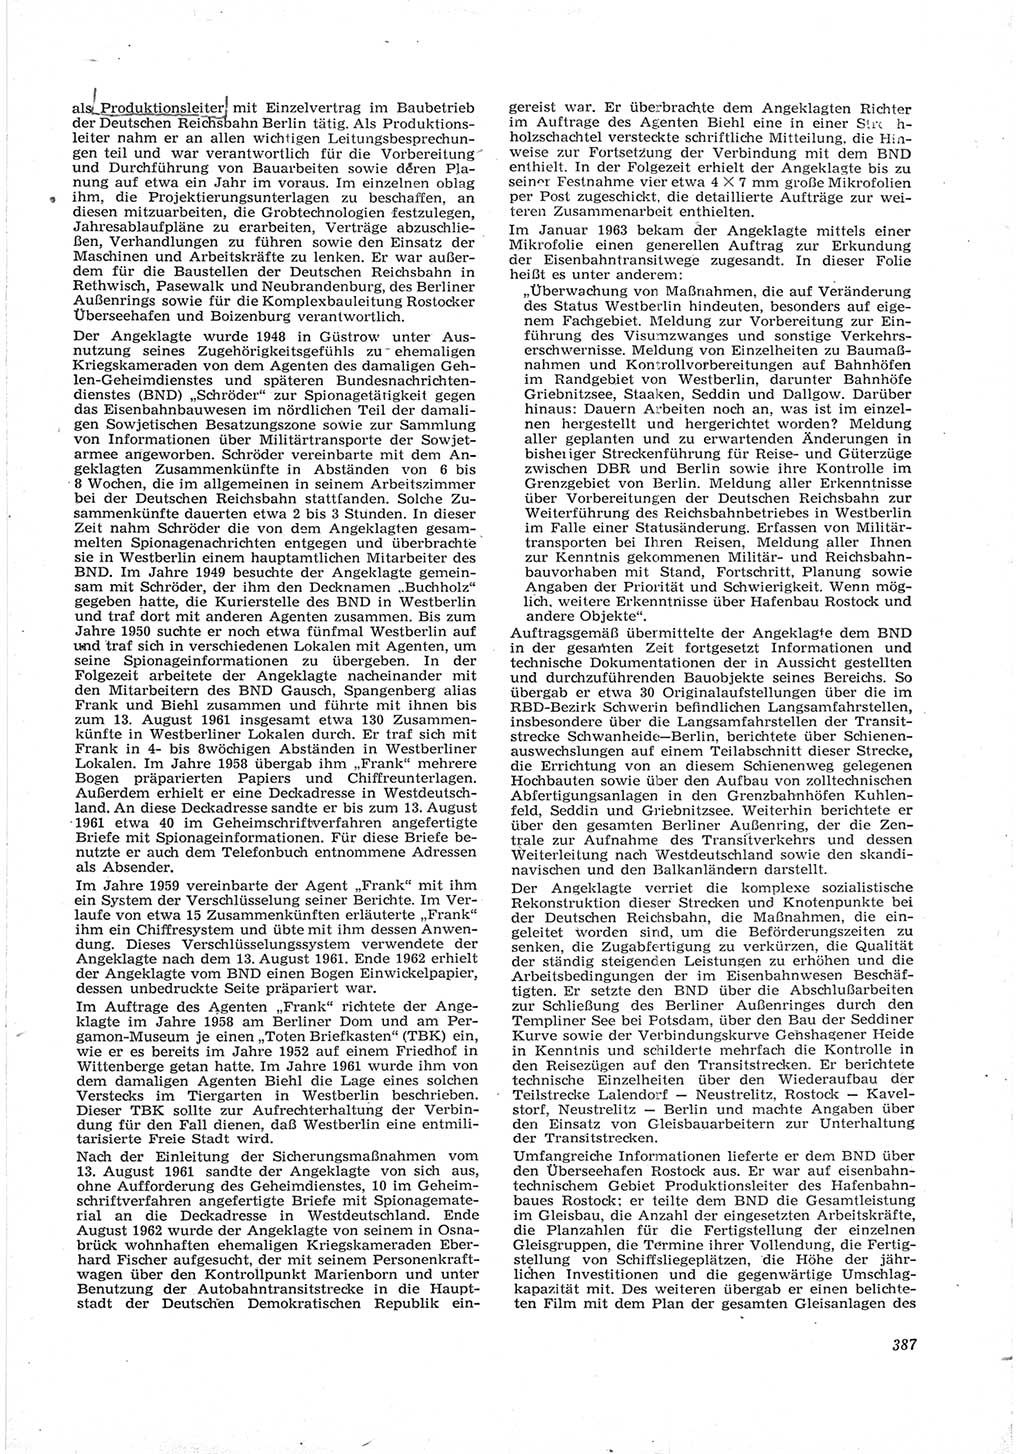 Neue Justiz (NJ), Zeitschrift für Recht und Rechtswissenschaft [Deutsche Demokratische Republik (DDR)], 17. Jahrgang 1963, Seite 387 (NJ DDR 1963, S. 387)